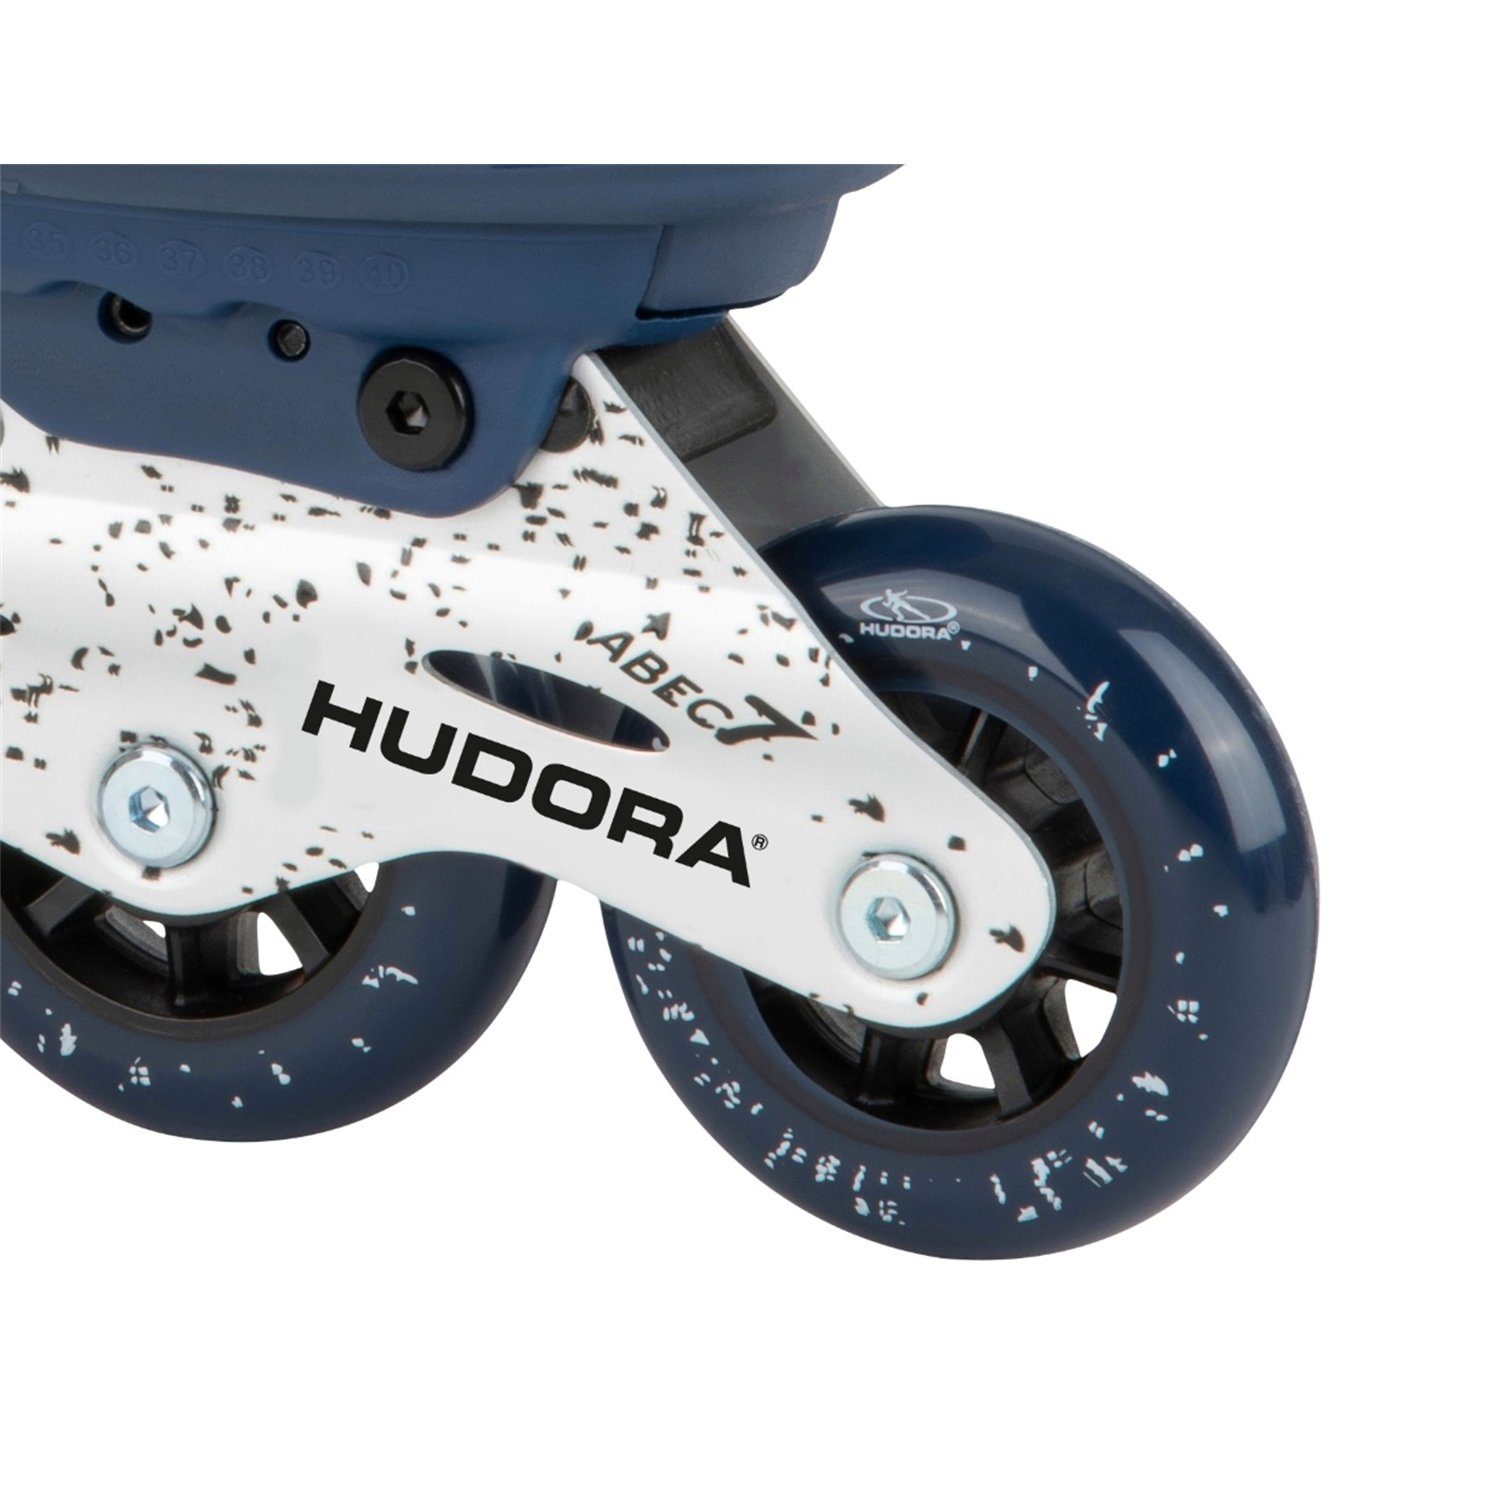 Hudora deep 28451 Inline Scooter Gr.35-40 Blue Skates Comfort,